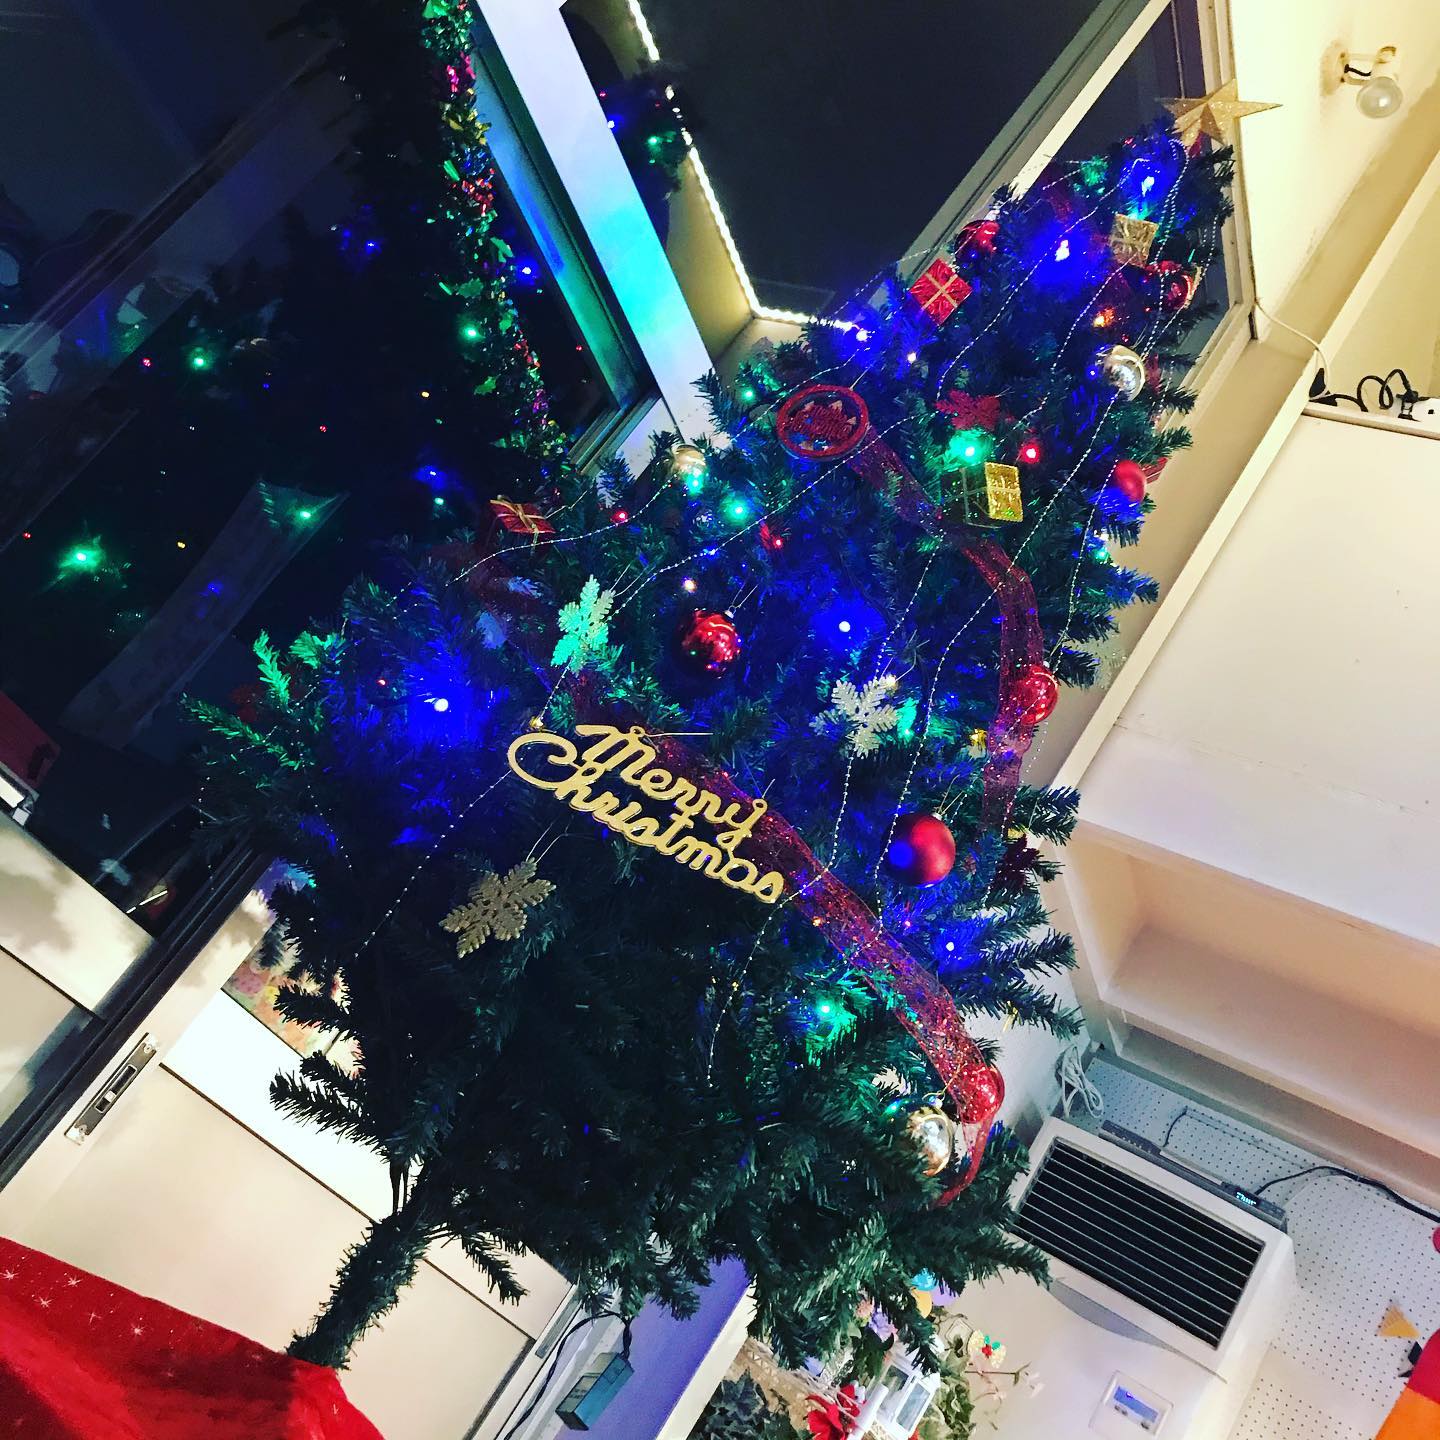 昨日は当店 @takuroyoshikane のイチナナで、クリスマスツリーの飾り付け配信をさせていただきました。飾り付けのセンスのない店長でしたが、完成したらテンション上がりましたスタジオのご予約、お問い合わせはこちらまでお願いします。tel 052-760-6607#クリスマスツリー #christmastree #xmastree #クリスマス#christmas #名古屋市千種区 #香流橋東 #インスタスポット#コロナ対策 #スタジオ #音楽スタジオ #安い音楽スタジオ #格安音楽スタジオ #激安音楽スタジオ #リハスタ #リハーサルスタジオ #ライブ配信 #生配信 #17live #17ライブ #イチナナ #インスタライブ #レコスタ #レコーディングスタジオ #音楽教室 #個人練習 #バンド練習 #レンタルオフィス #レンタルスペース #musicstudio